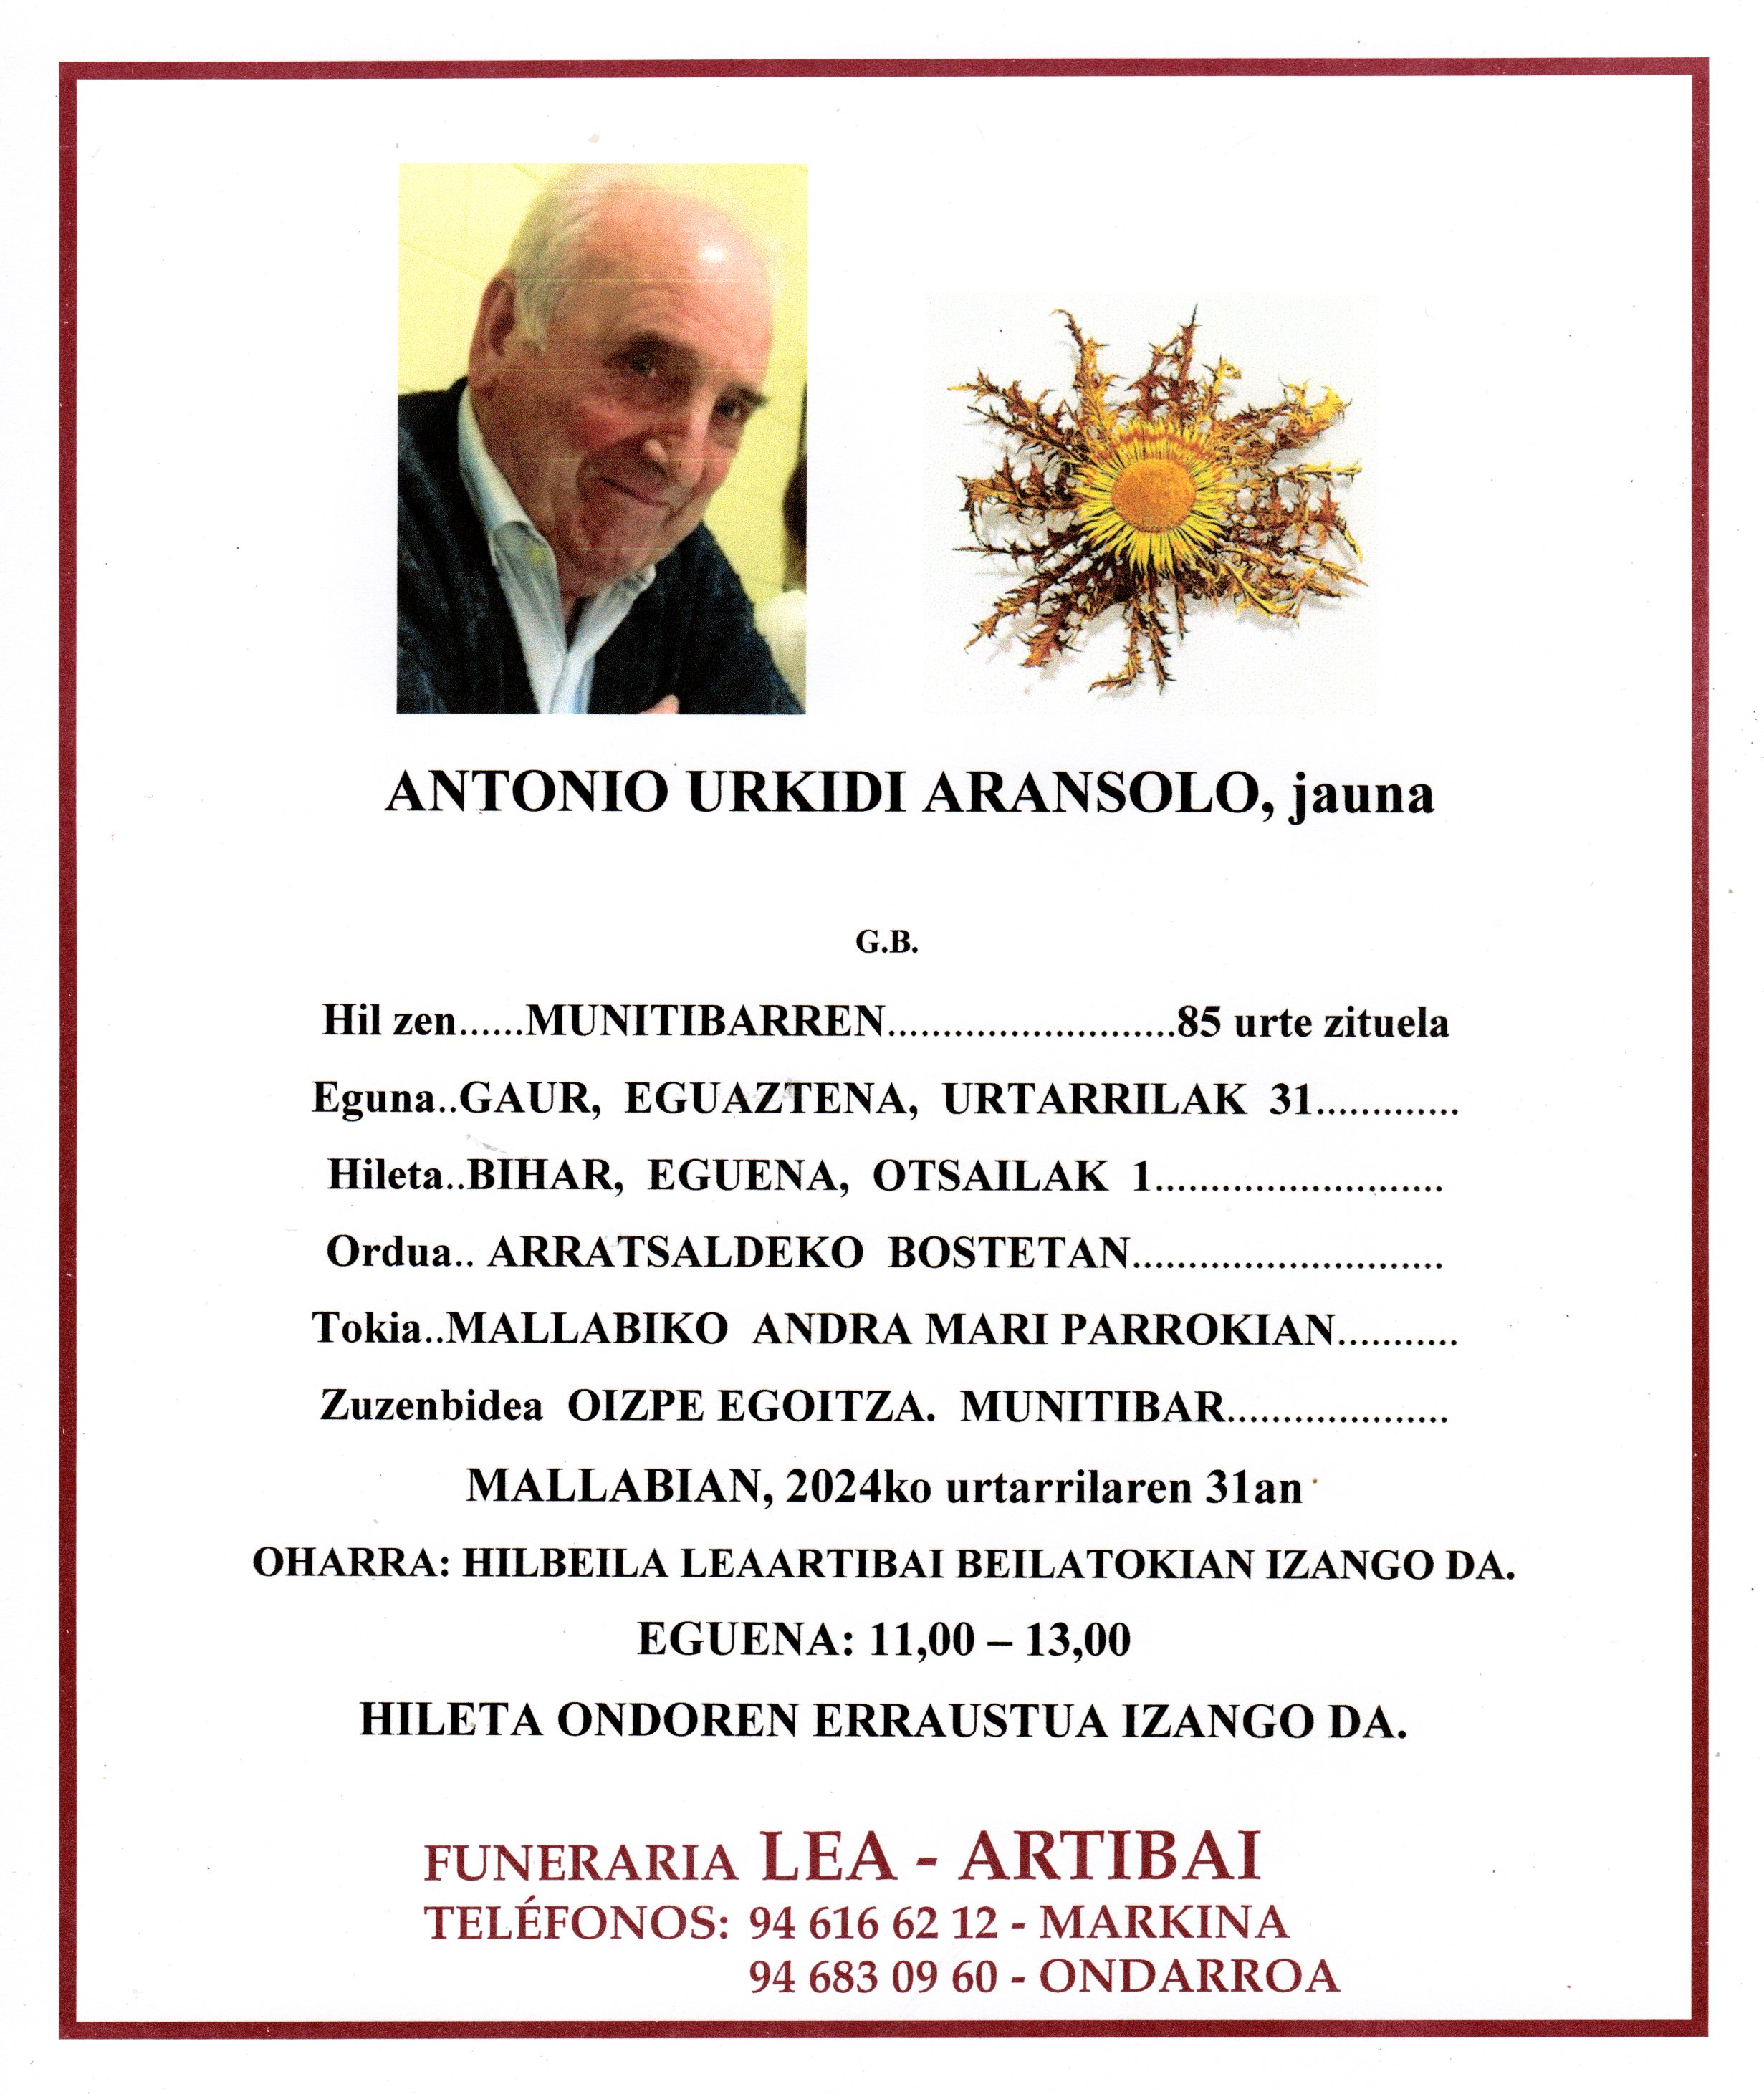 Antonio Urkidi Aransolo